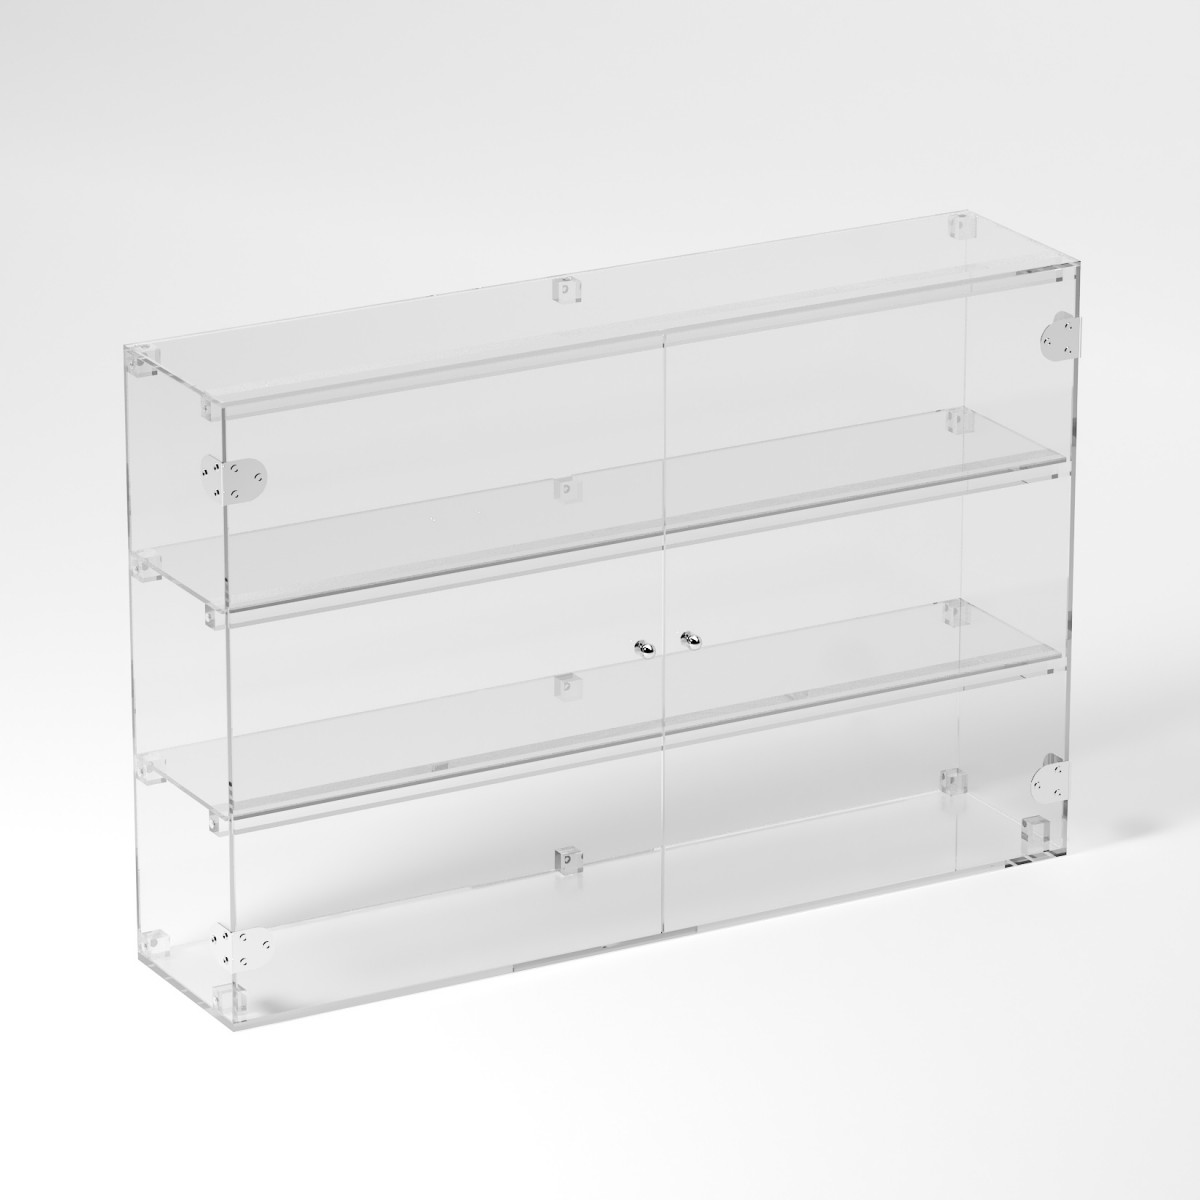 E-820 VET - Ampia vetrina espositiva in plexiglass trasparente a 3 ripiani - Misure: 90 x 20 x h60 cm